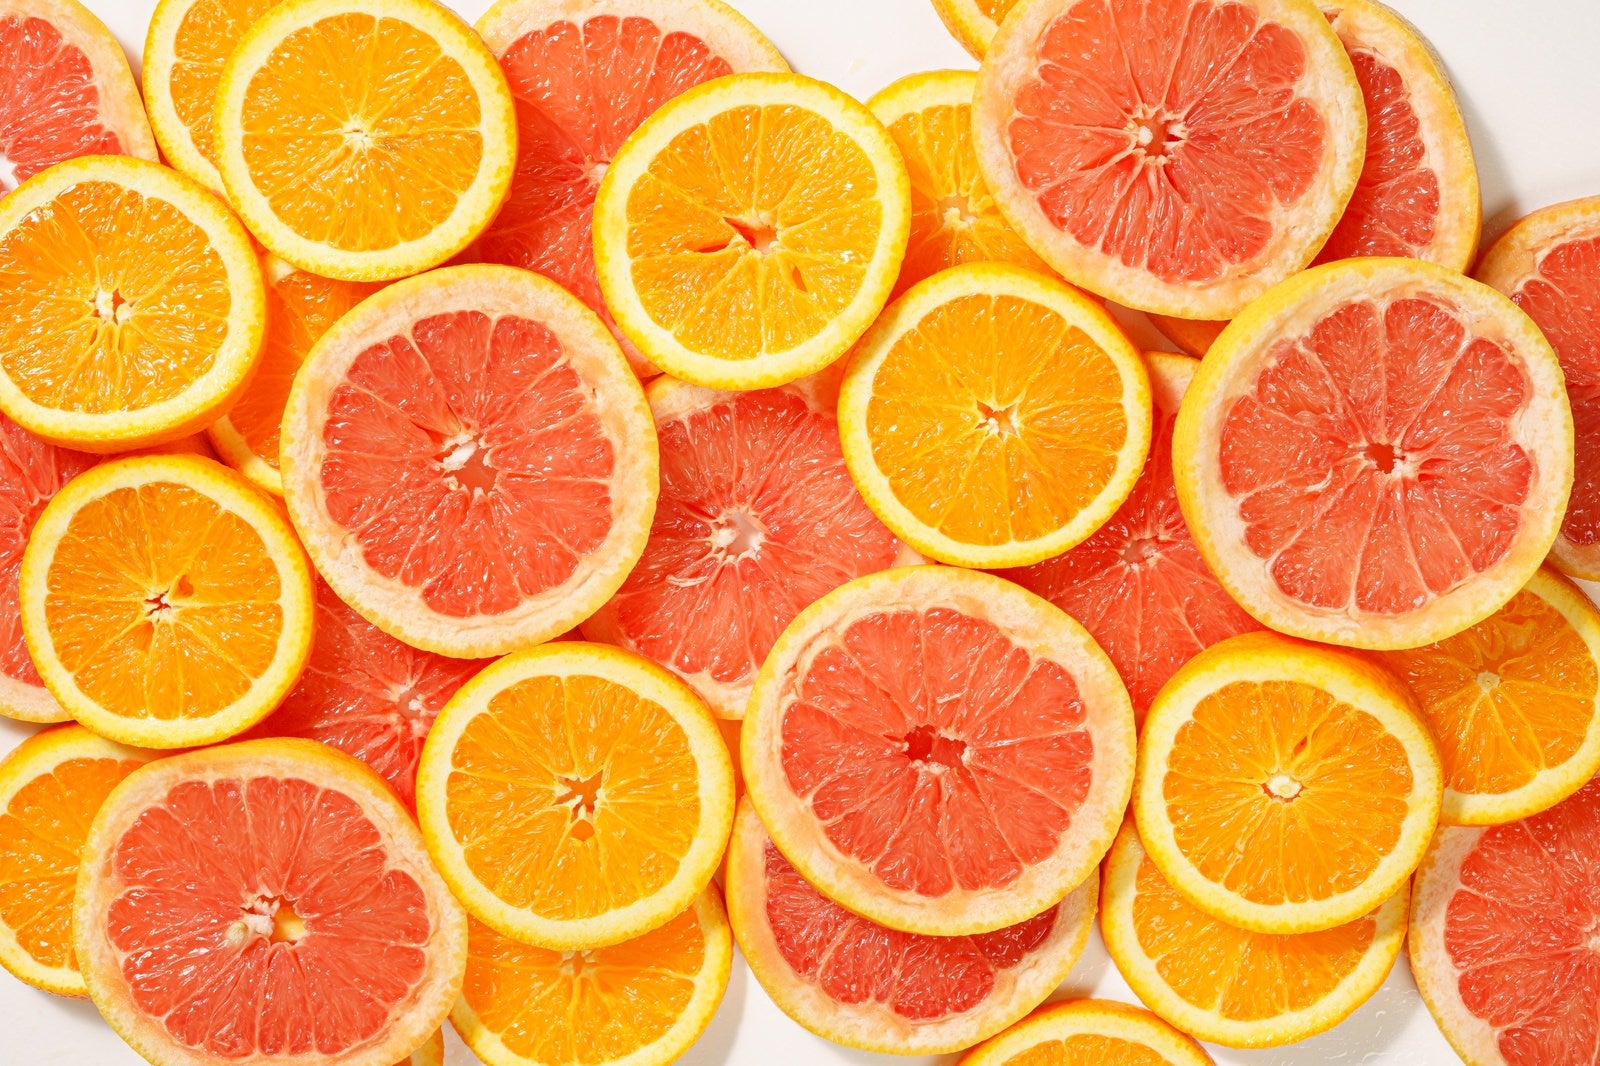 「輪切りにしたオレンジとグレープフルーツ」の写真